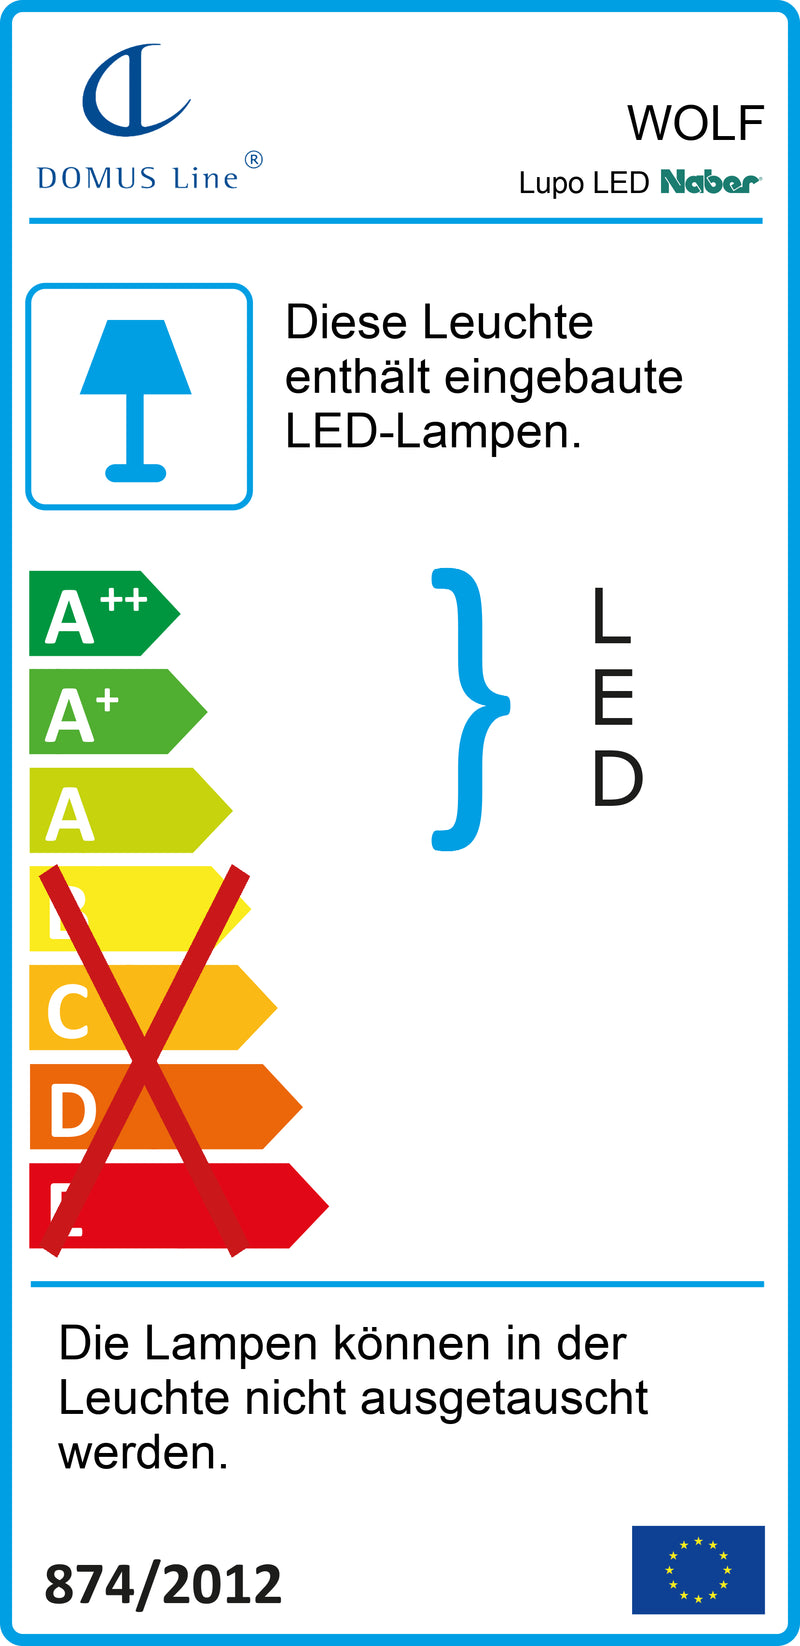 E-Label zu Zeichnung zu Lupo LED als Variante L 900 mm, 15 W, schwarz matt von Naber GmbH in der Kategorie Lichttechnik in Österreich auf conceptshop.at